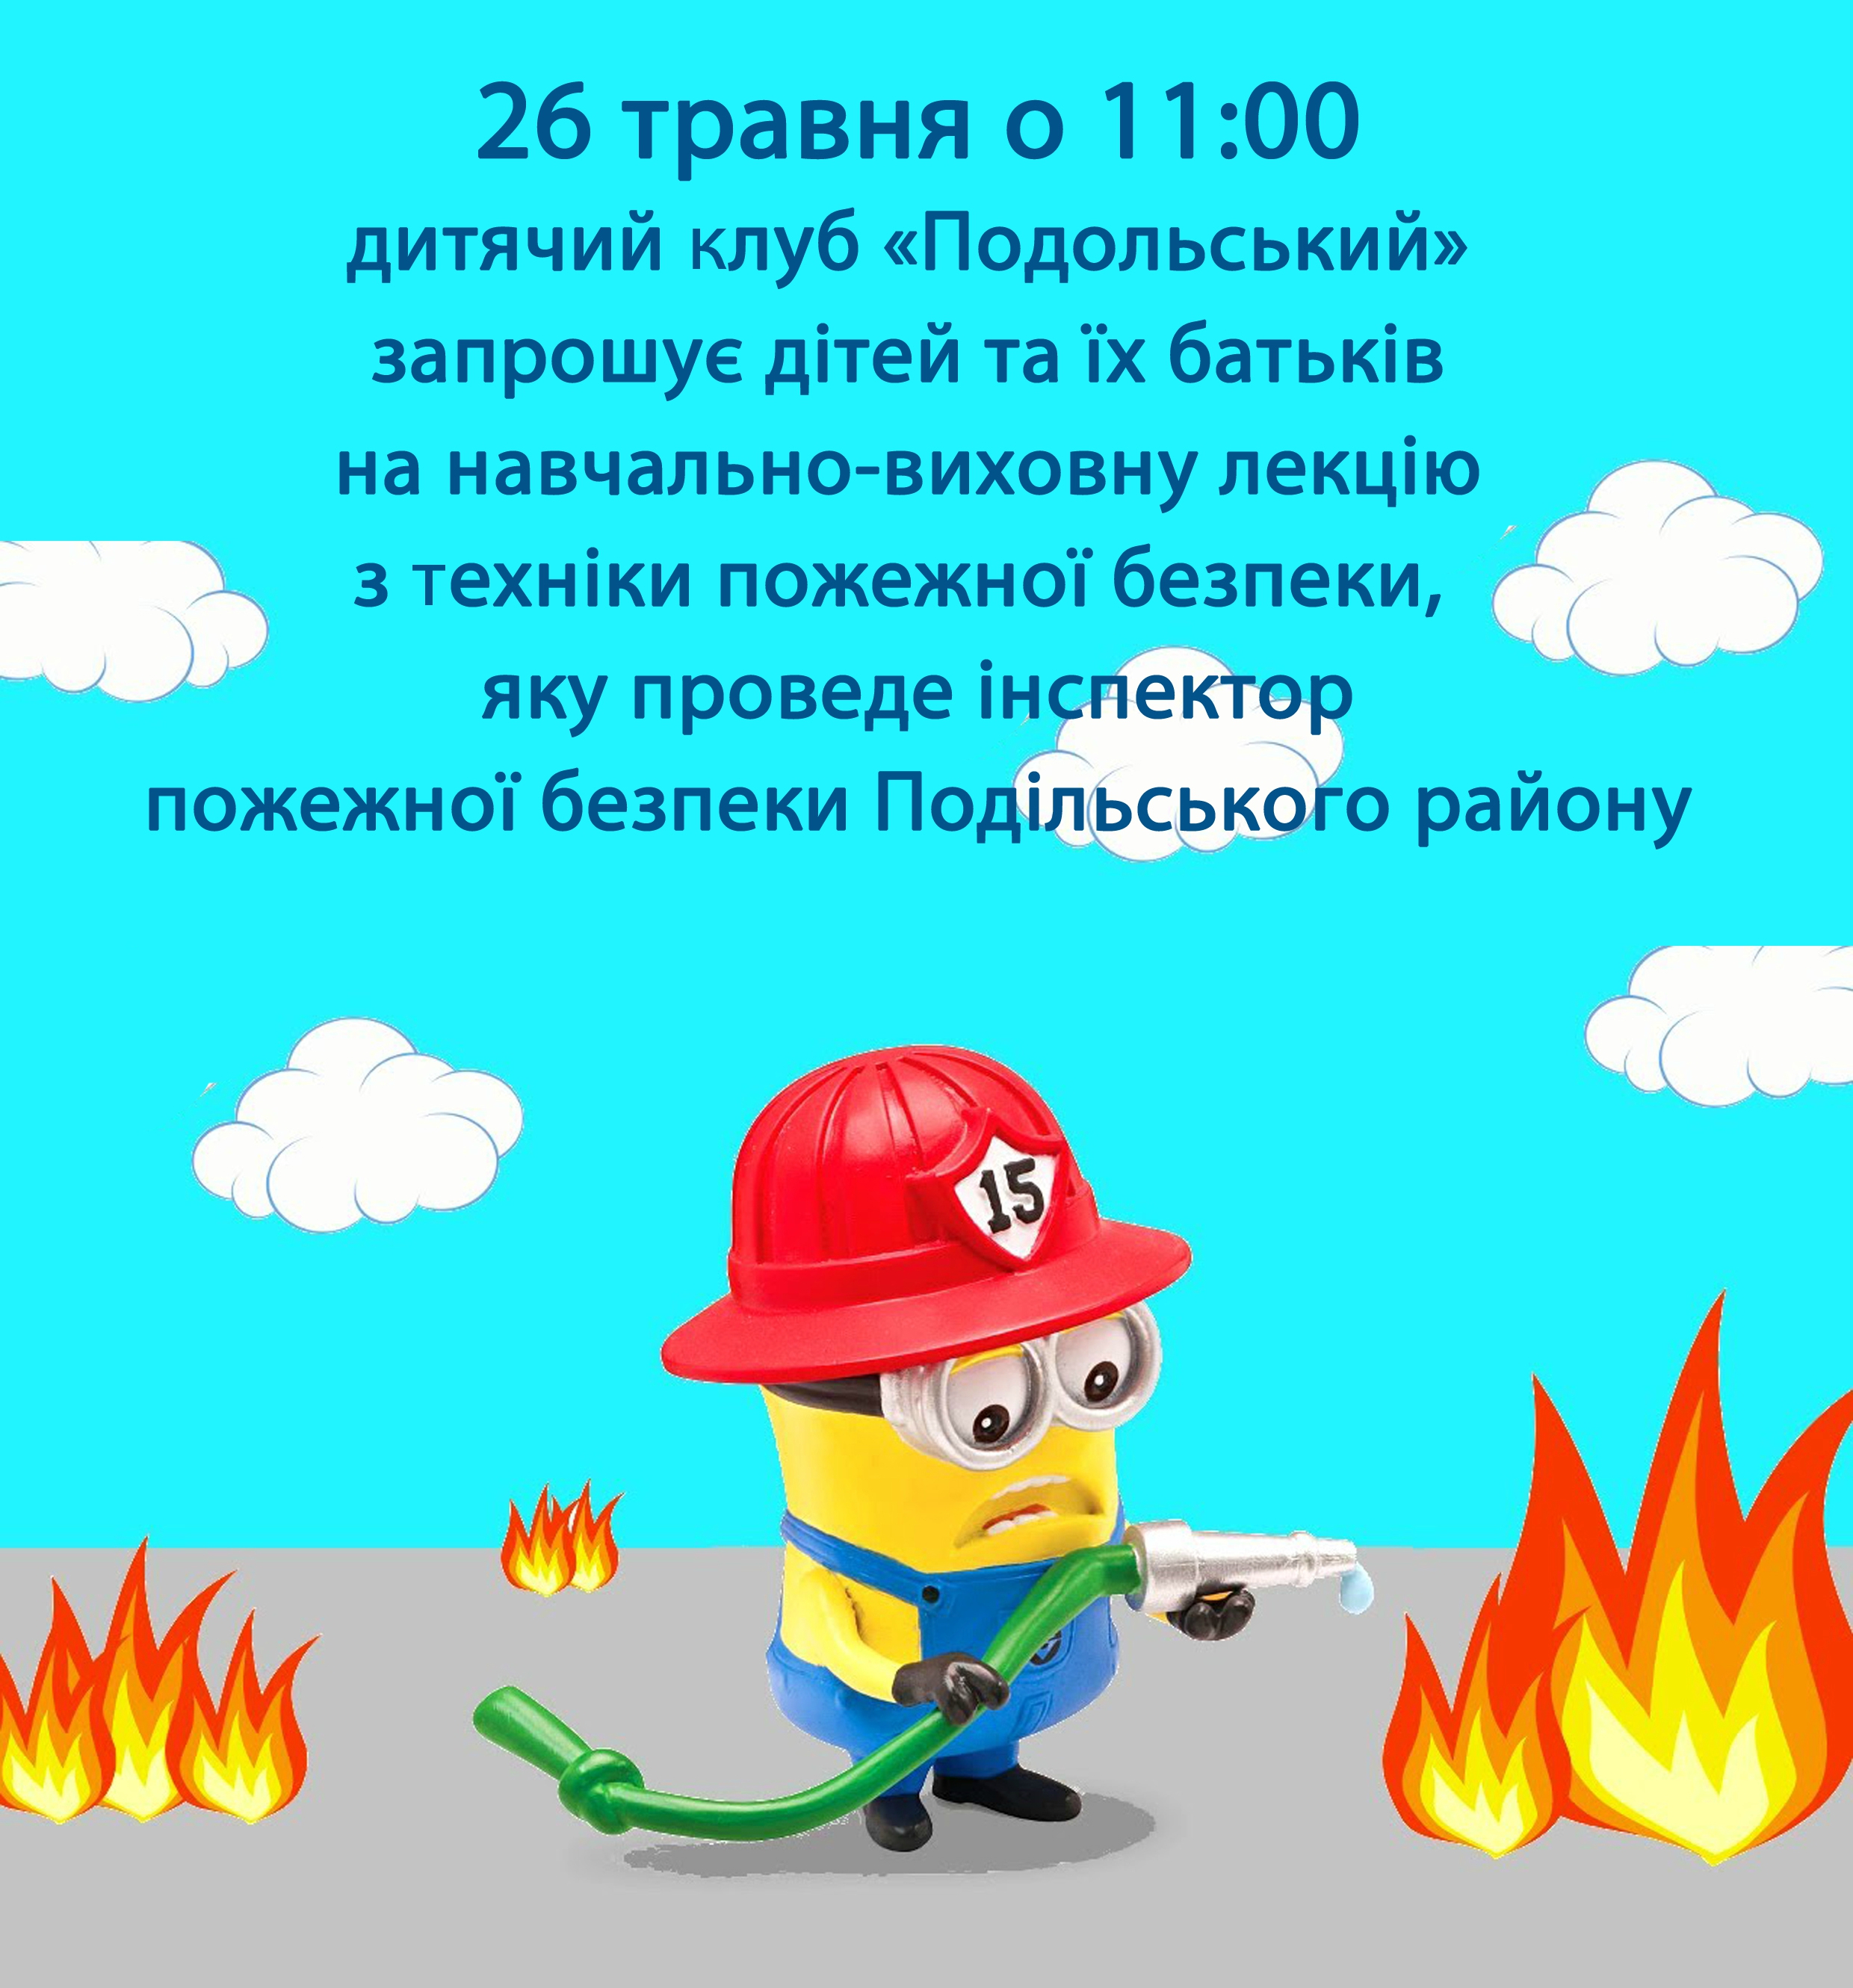 Лекція з техніки пожежної безпеки в "Подольский"